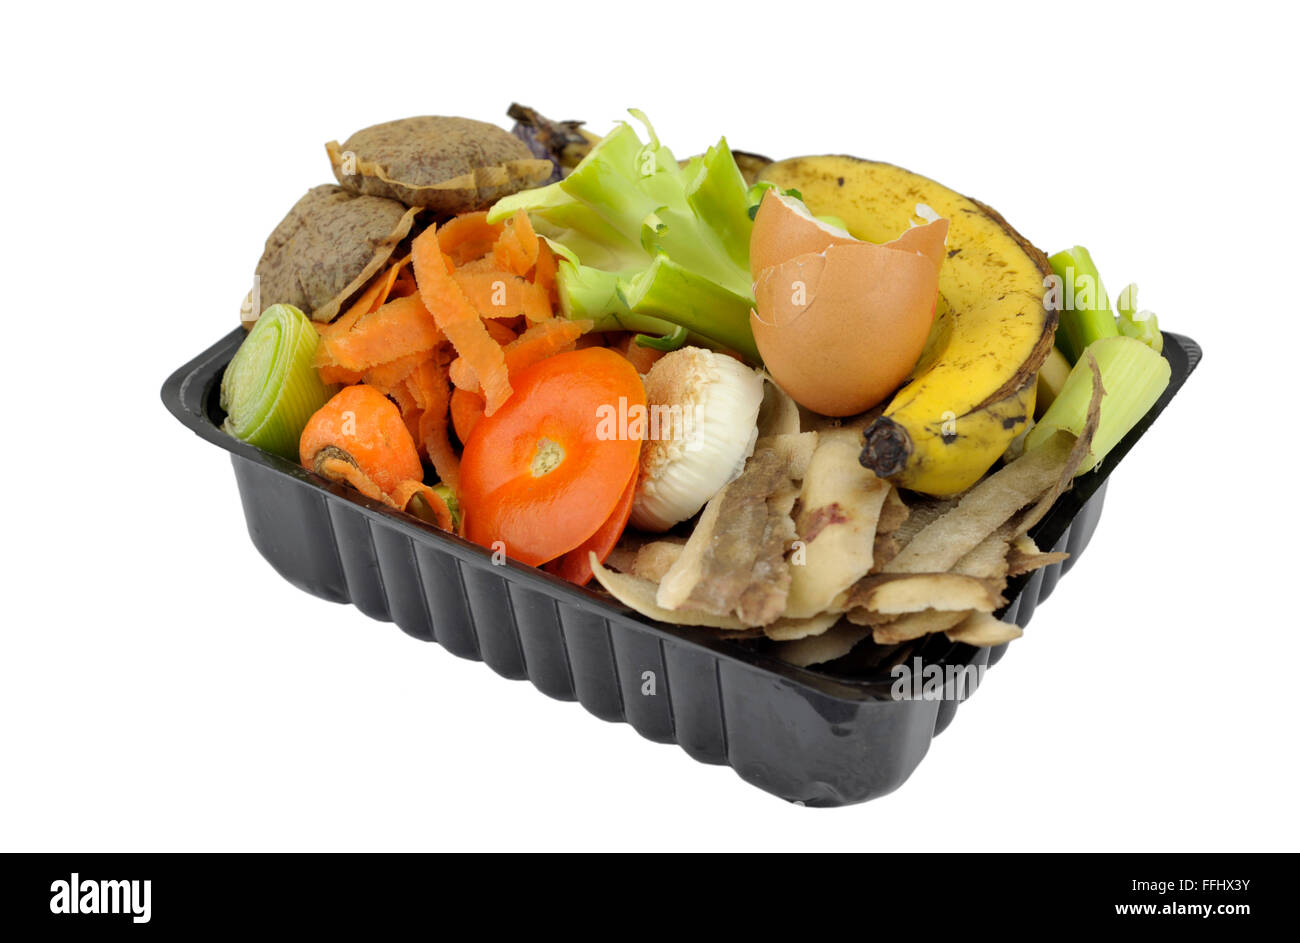 Vegetali, frutta cucina domestici rifiuti alimentari, raccolti in ri-imballaggi usati per compostaggio domestico o aggiunta di worm bin. Foto Stock